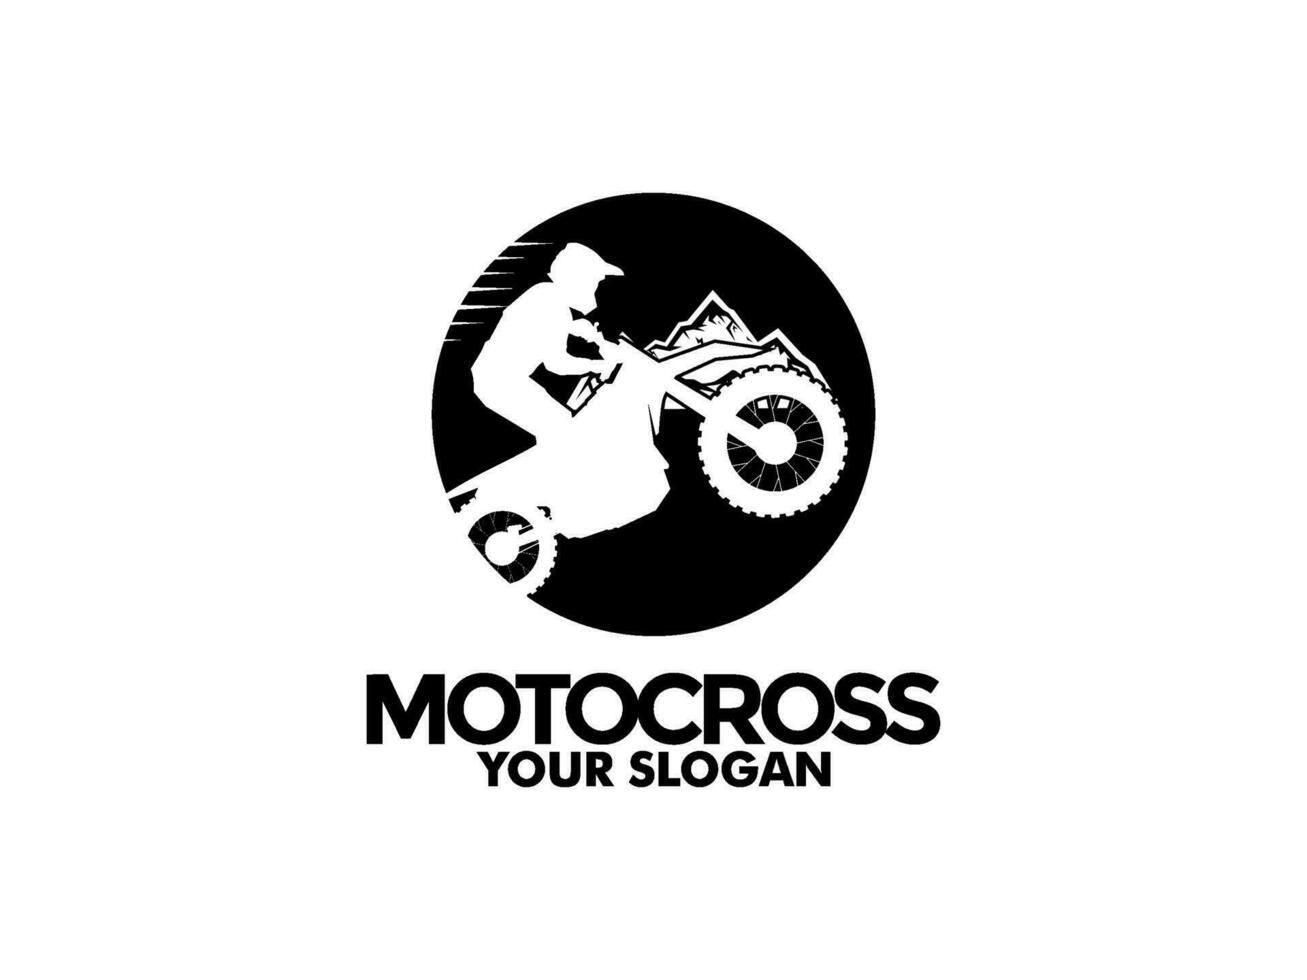 motocross avec une cavalier sur une moto, motocross logo vecteur illustration